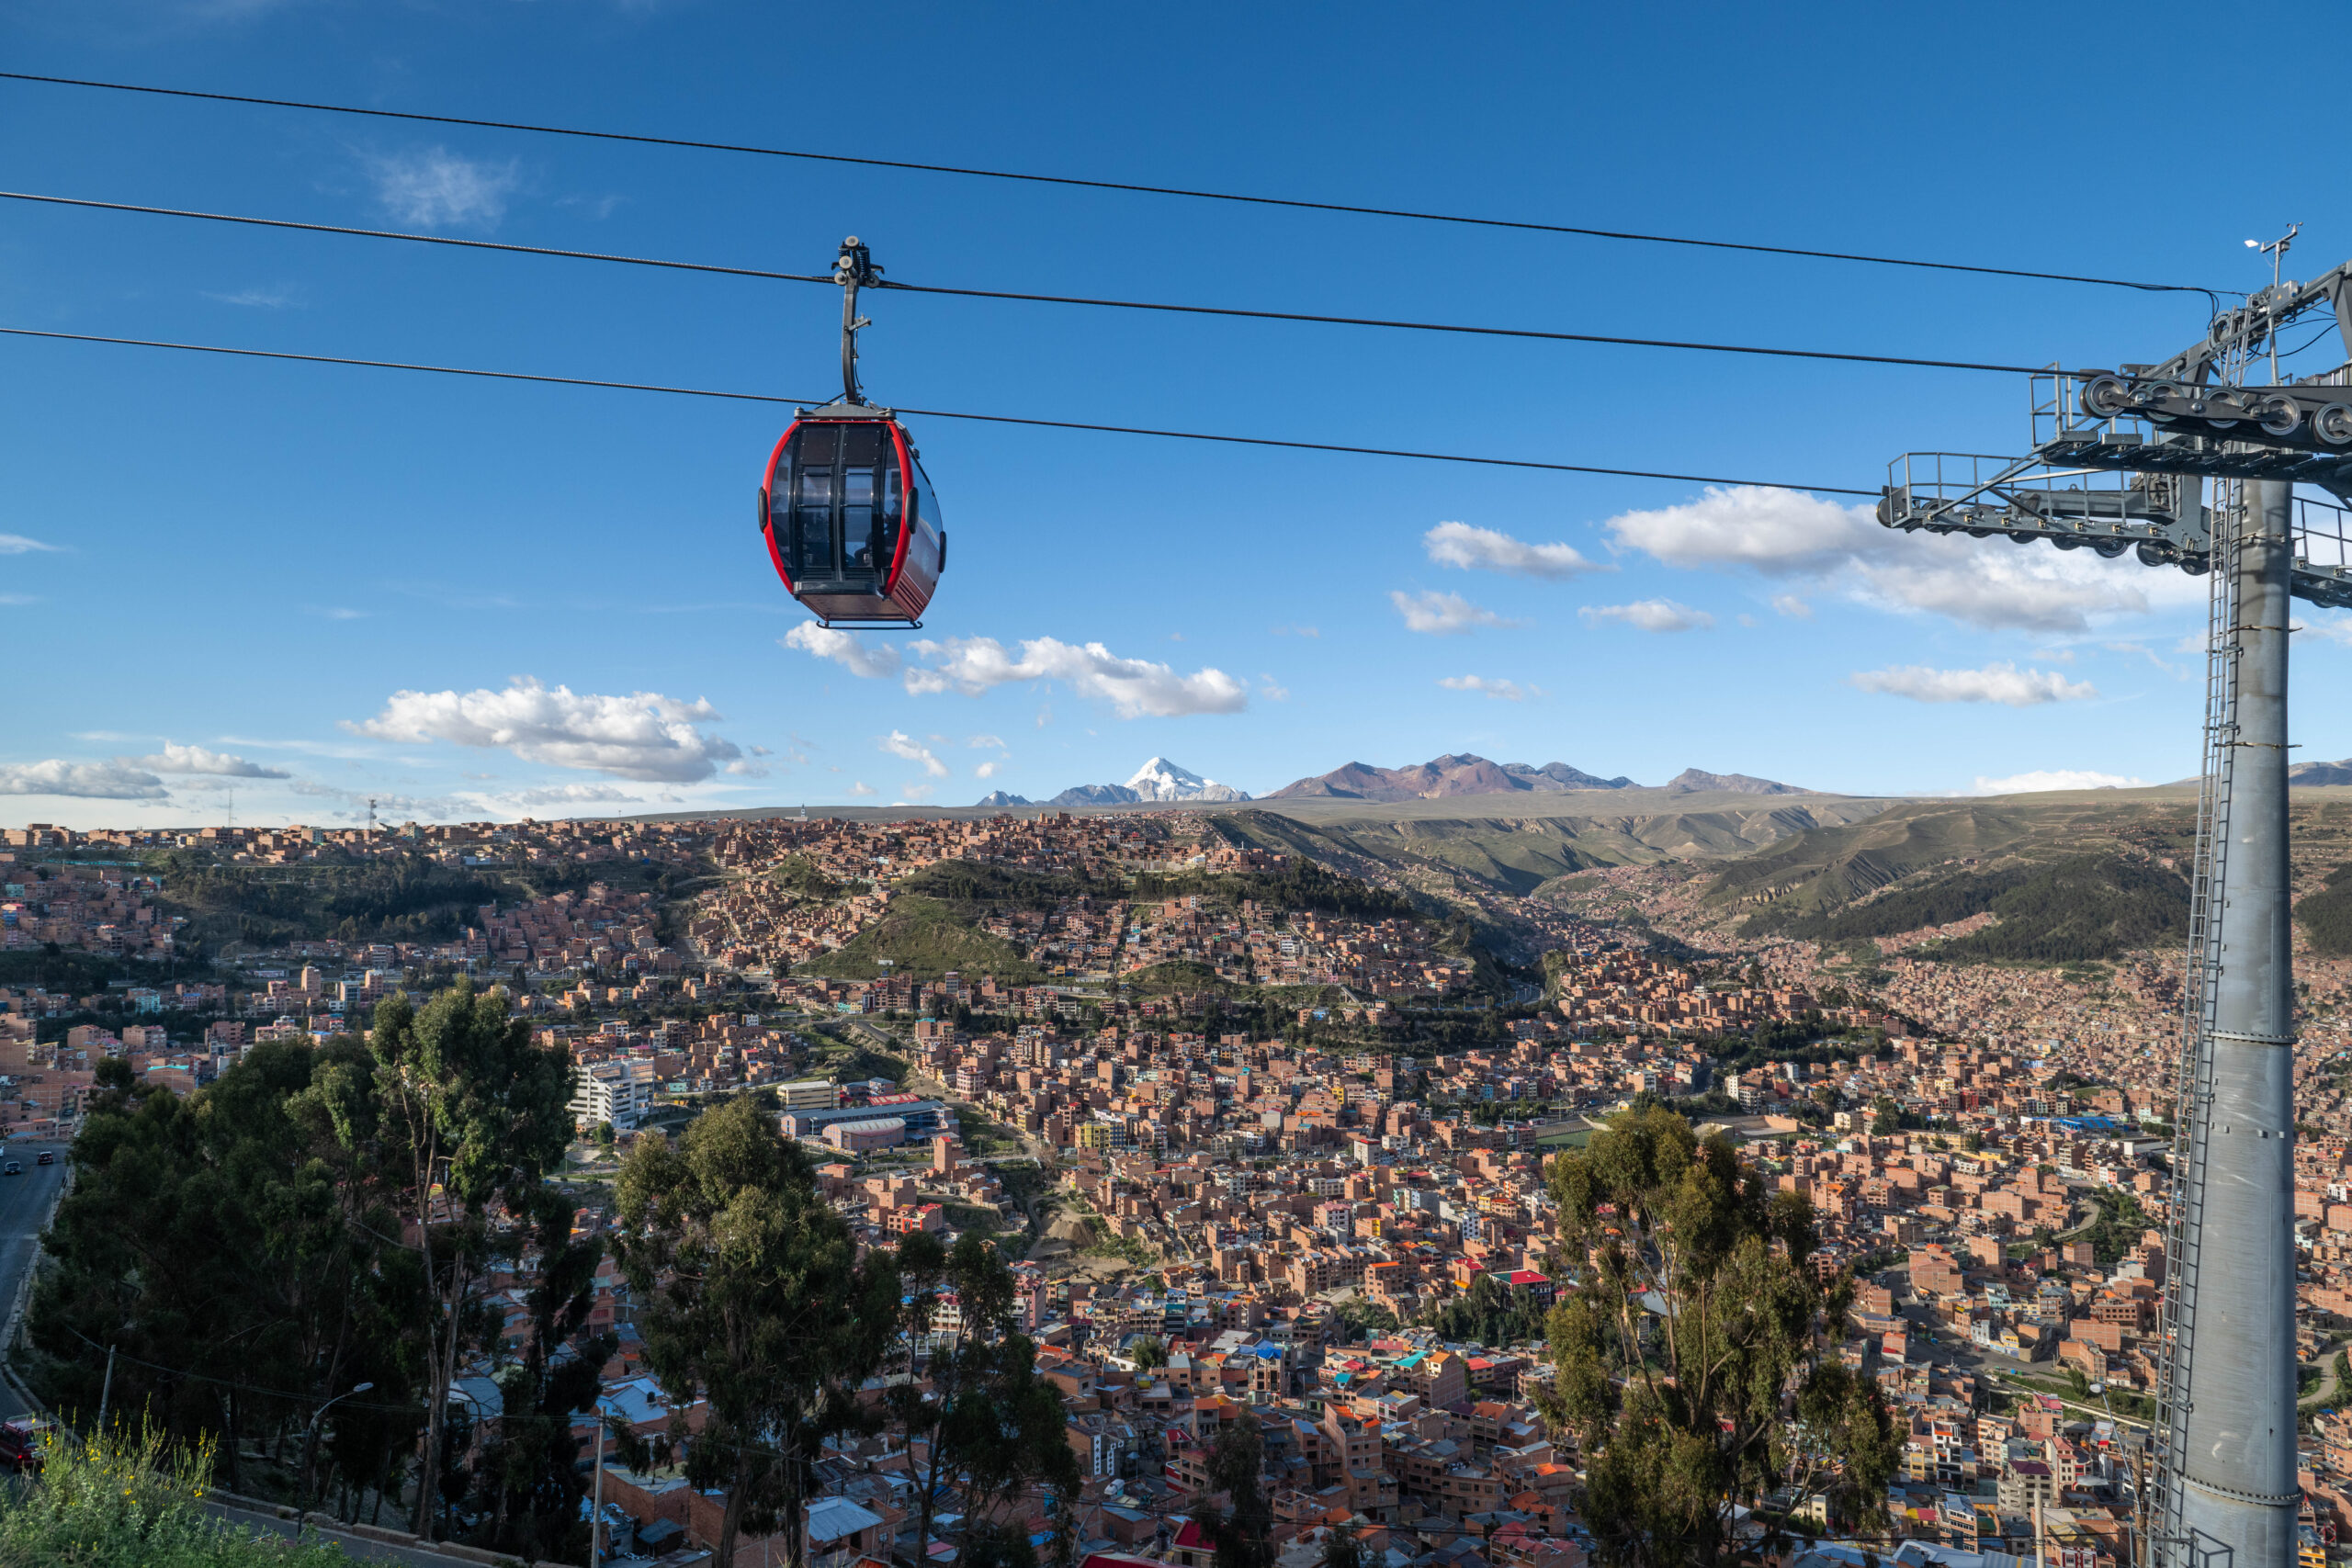 Bolivia – City scenes